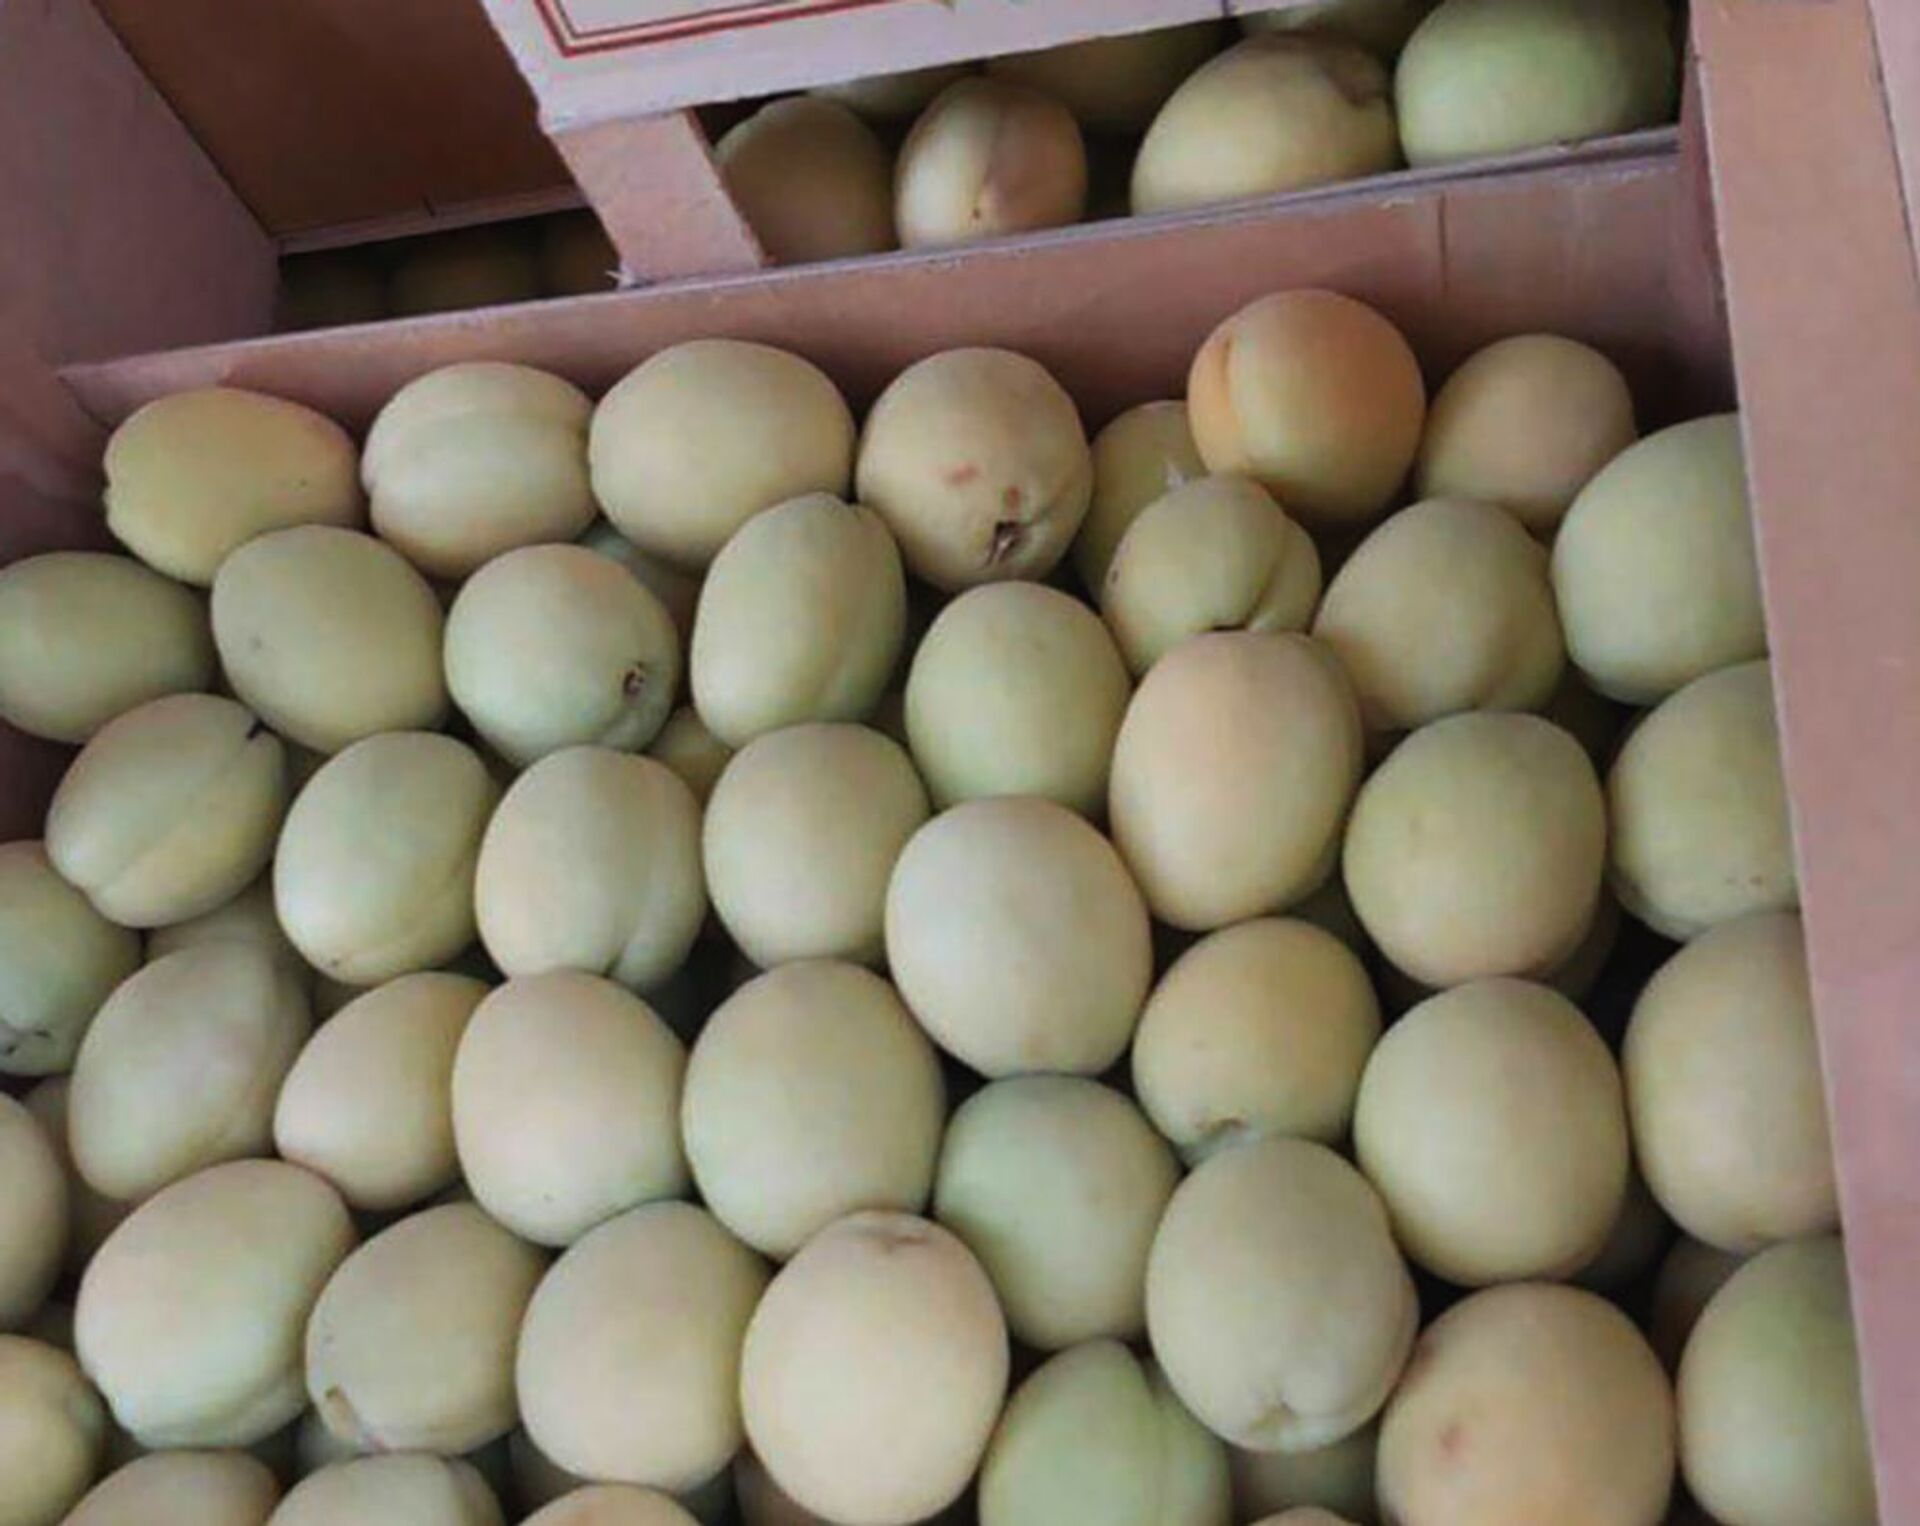  Армянские абрикосы расходятся на французском рынке на ура — экспорт растет - Sputnik Армения, 1920, 09.07.2021